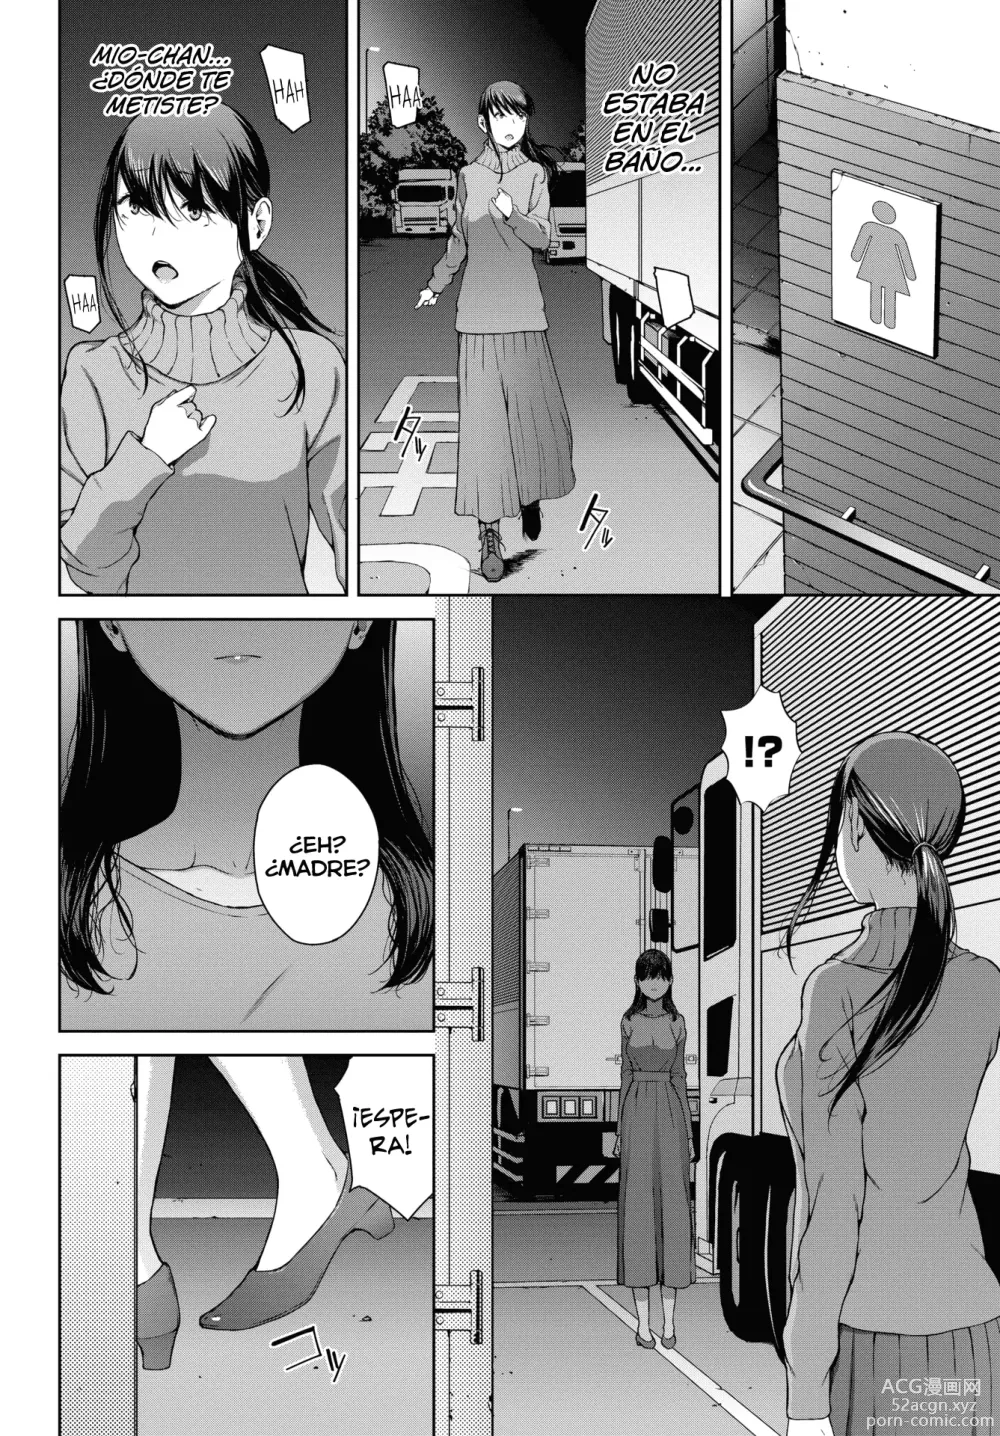 Page 22 of manga Yoriko 4